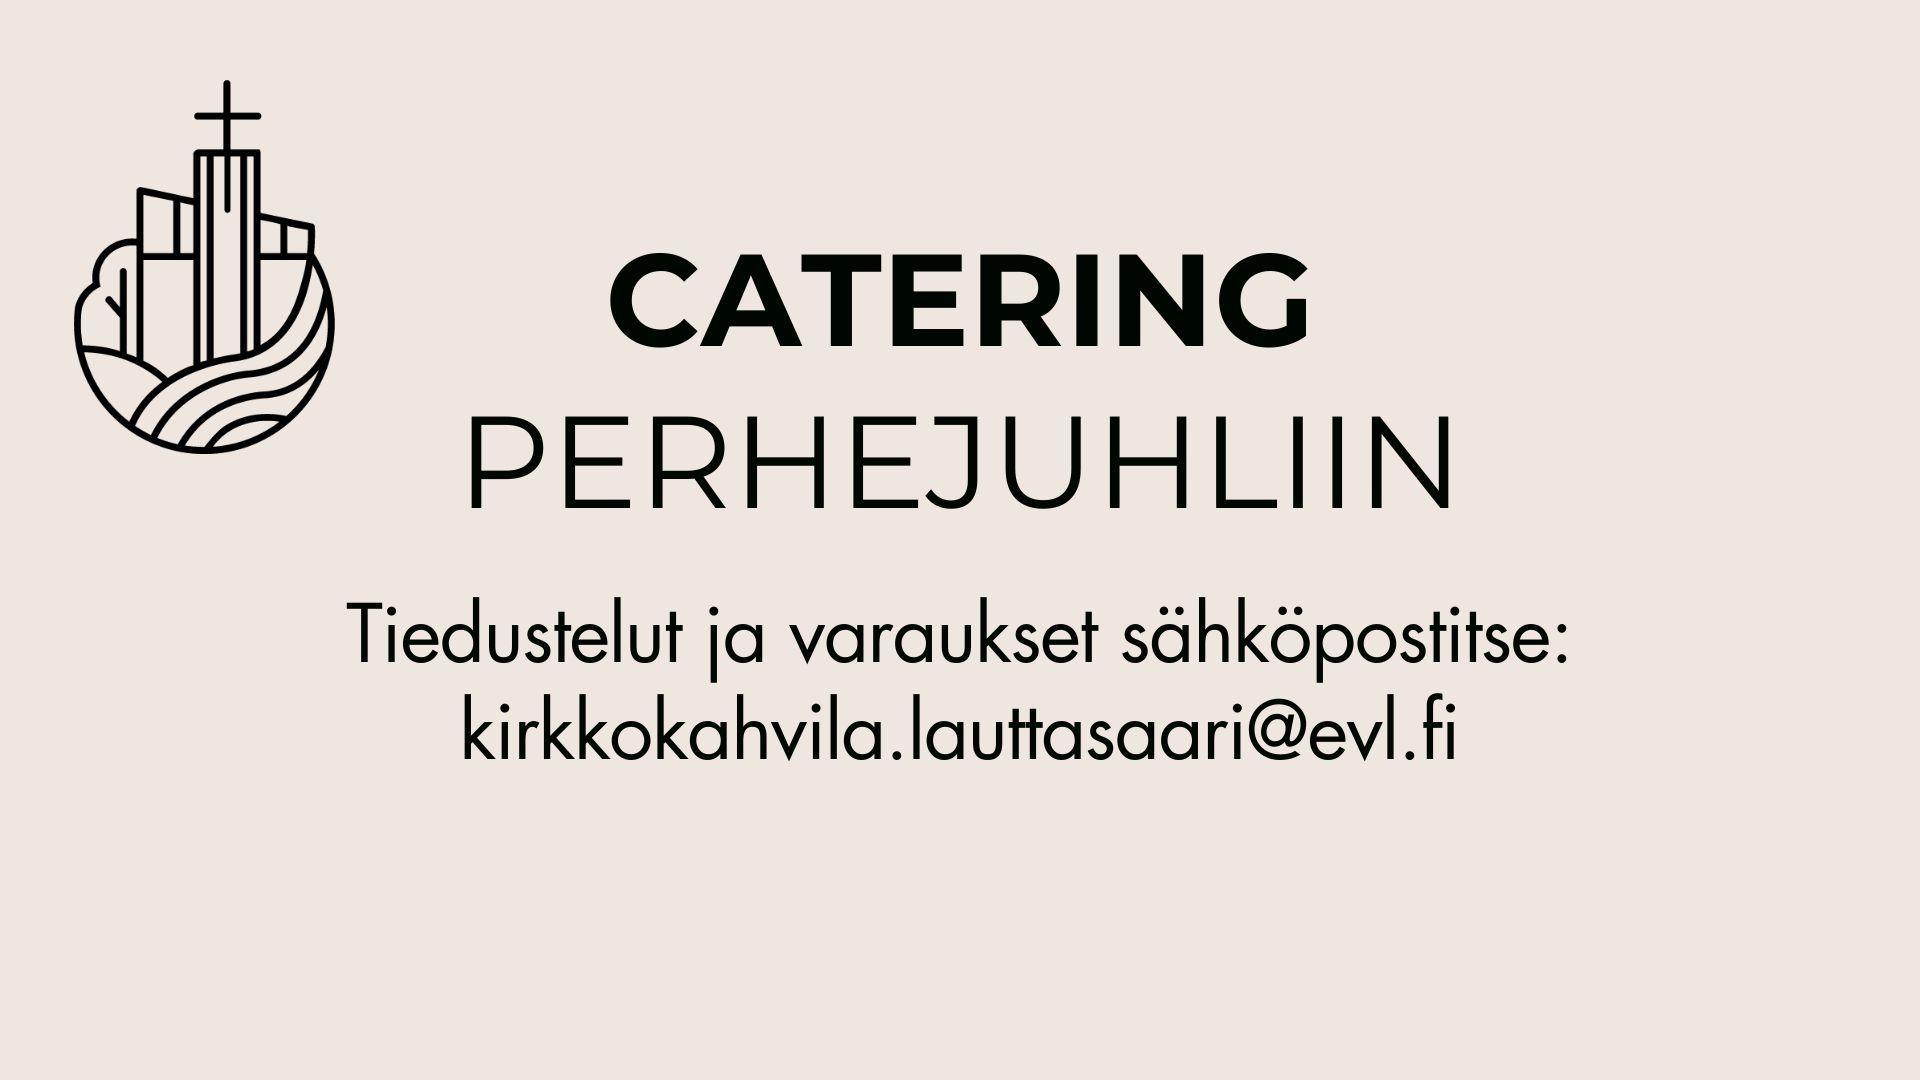 Kirkkokahvila catering